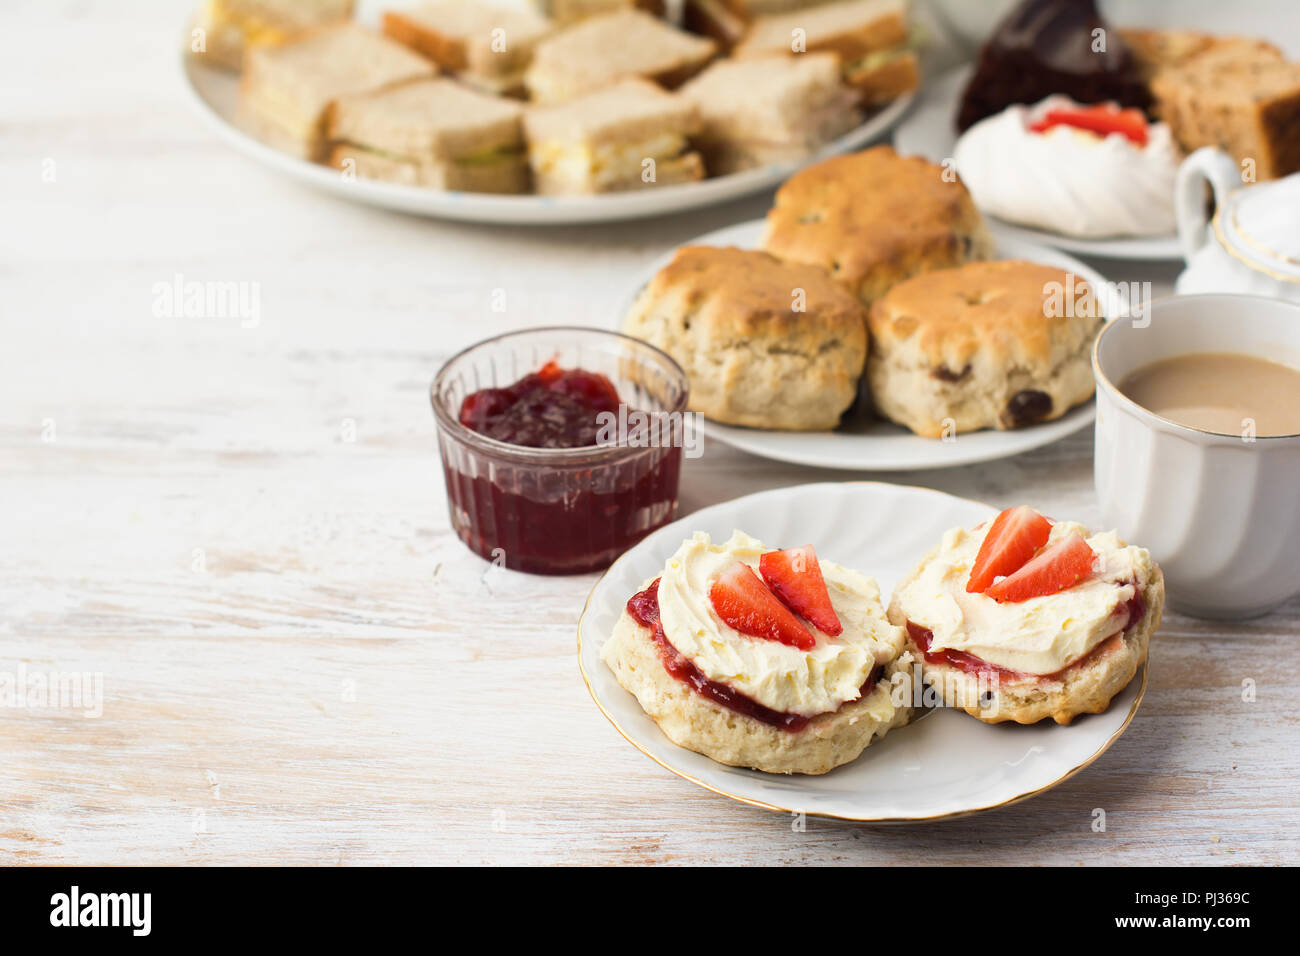 Englisch Cream Teas, Scones mit Marmelade und Sahne, Tee mit Milch, mit Sandwiches auf der Rückseite, auf die Weiße Holztisch, selektiver Fokus kopieren Platz für t Stockfoto